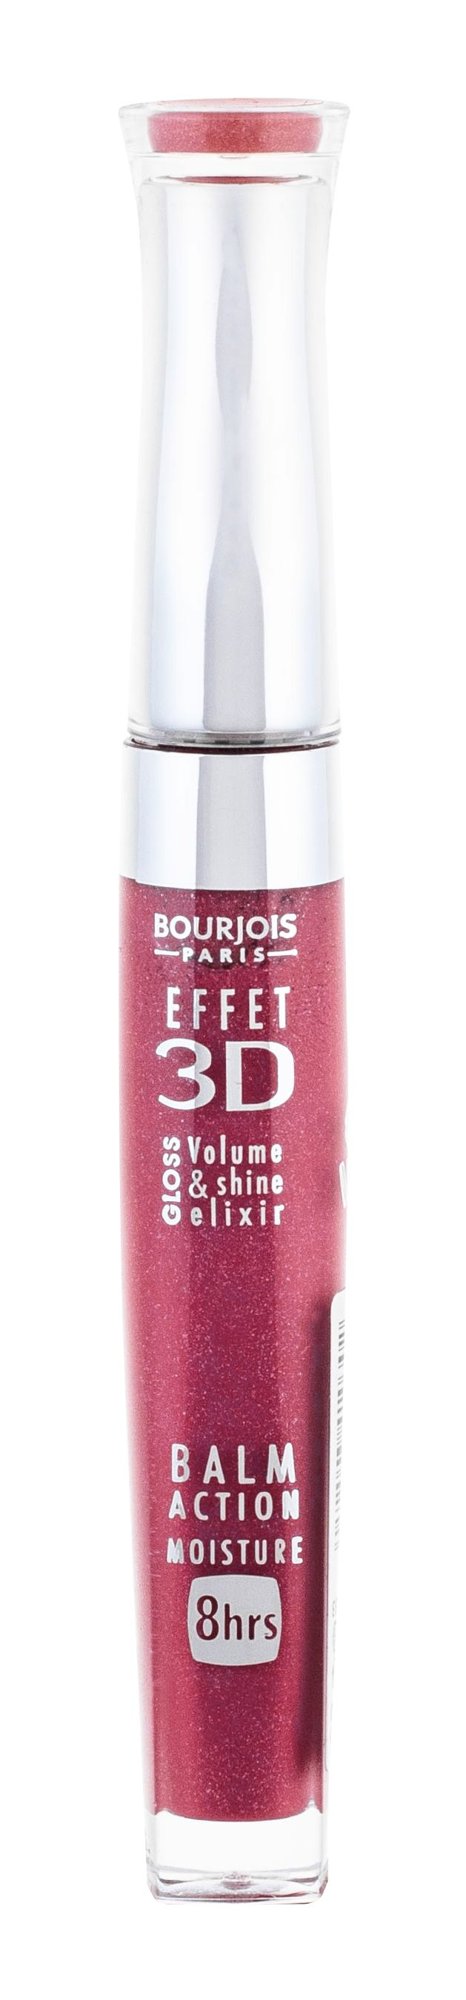 BOURJOIS Paris 3D Effet 5,7ml lūpų blizgesys